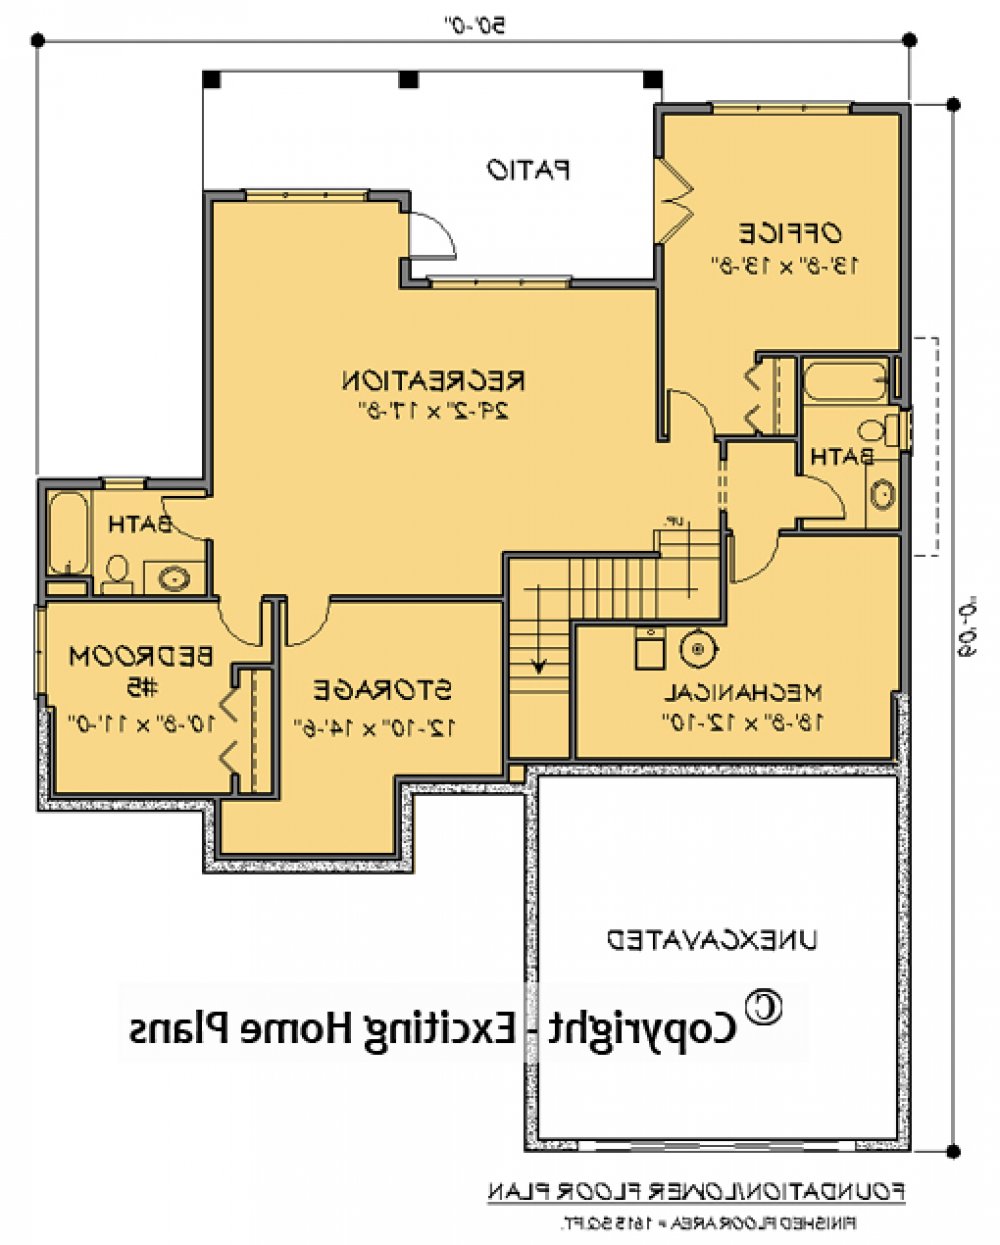 House Plan E1719-10 Lower Floor Plan REVERSE